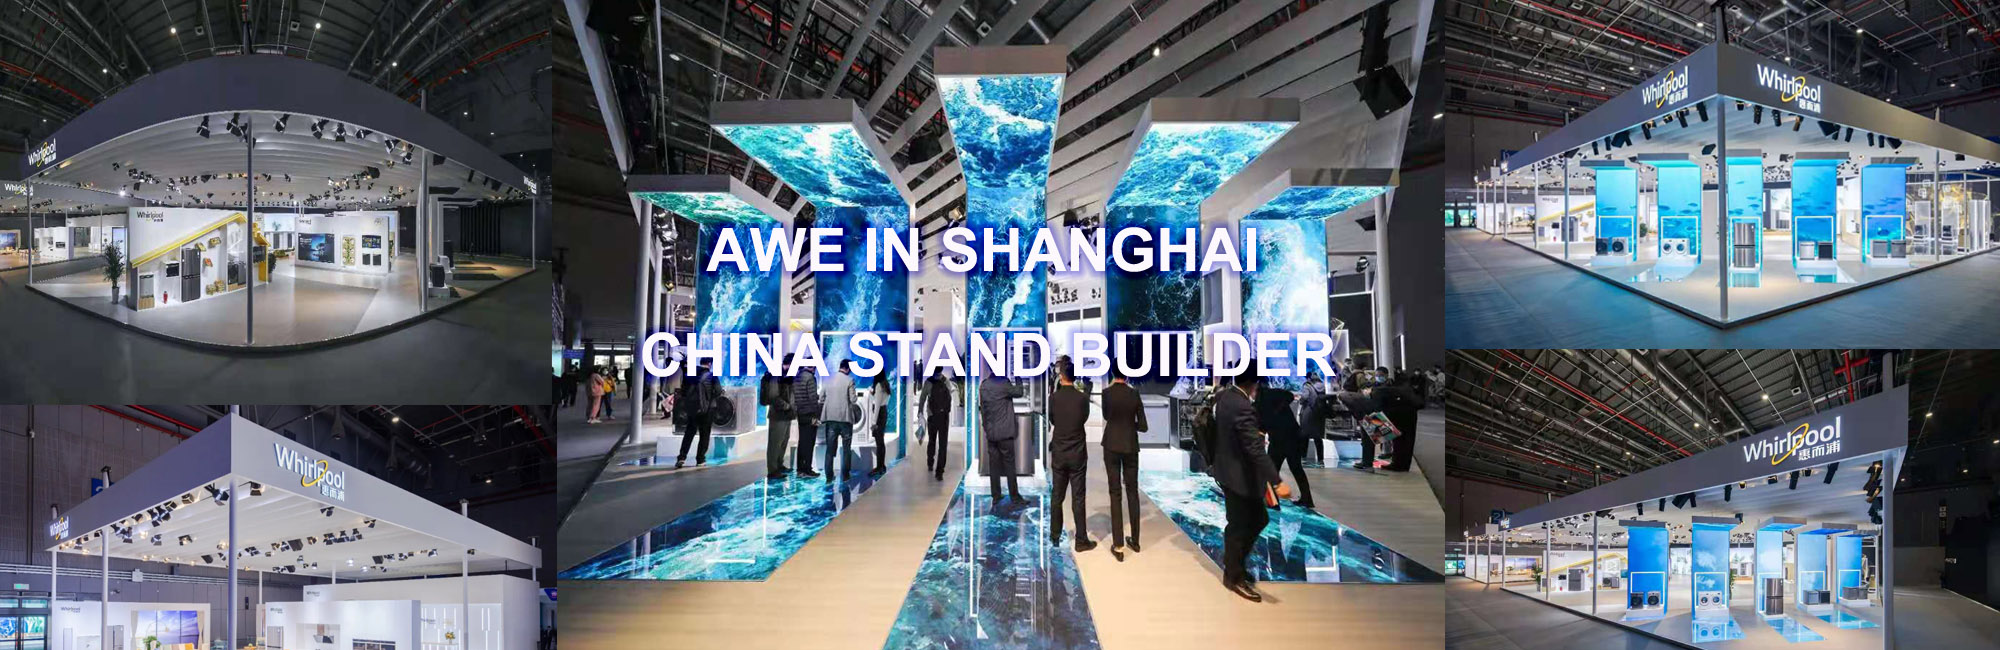 shanghai exhibition stand builder